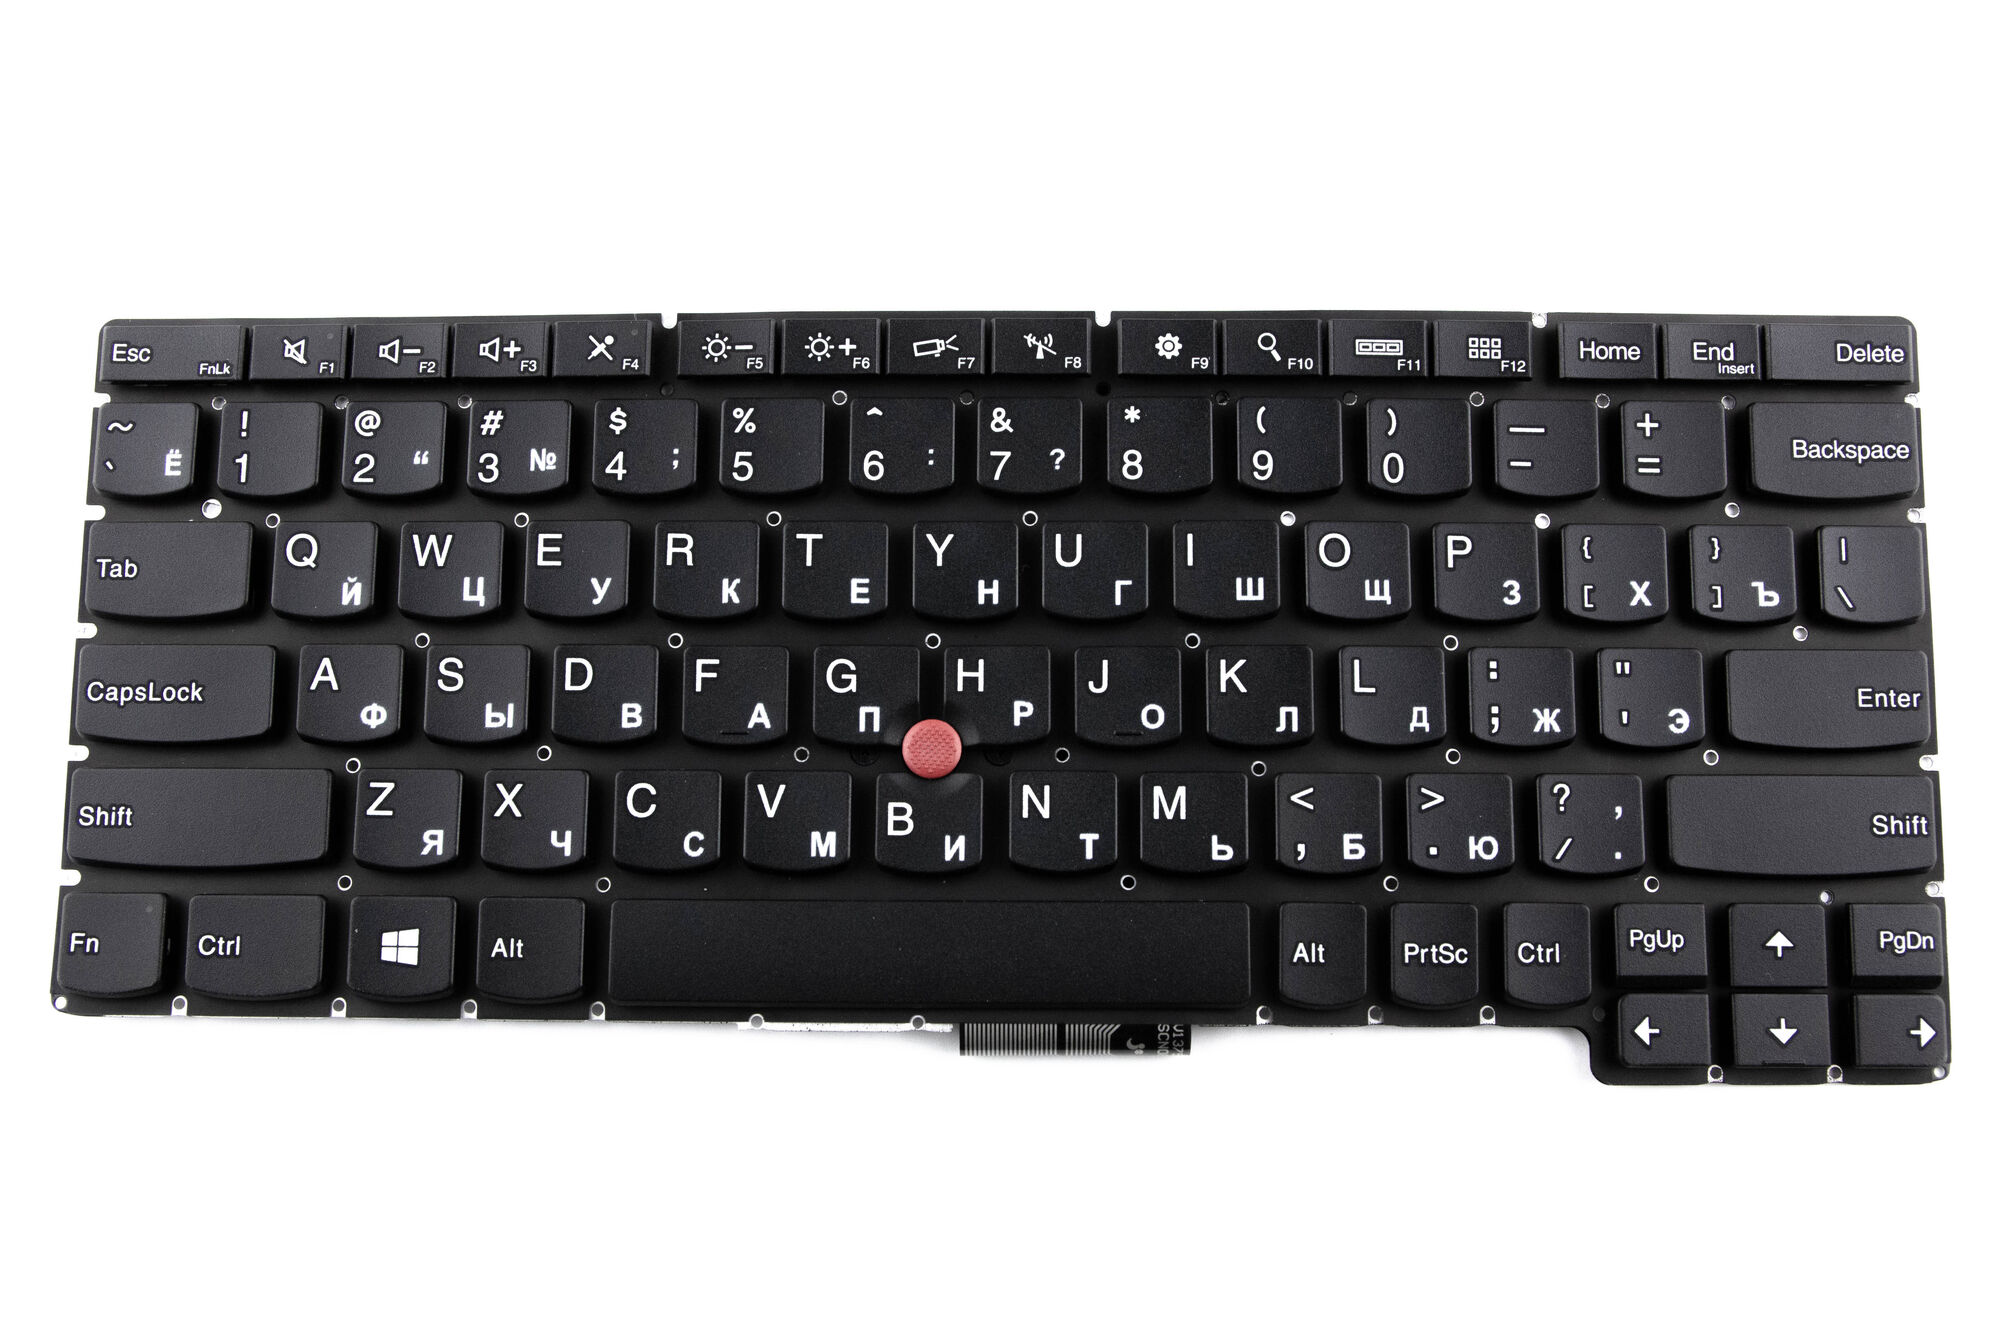 Клавиатура для ноутбука Lenovo ThinkPad X1 Helix p/n: 04Y0100, V137520AS1, 0C01501, PN84, 04X0260